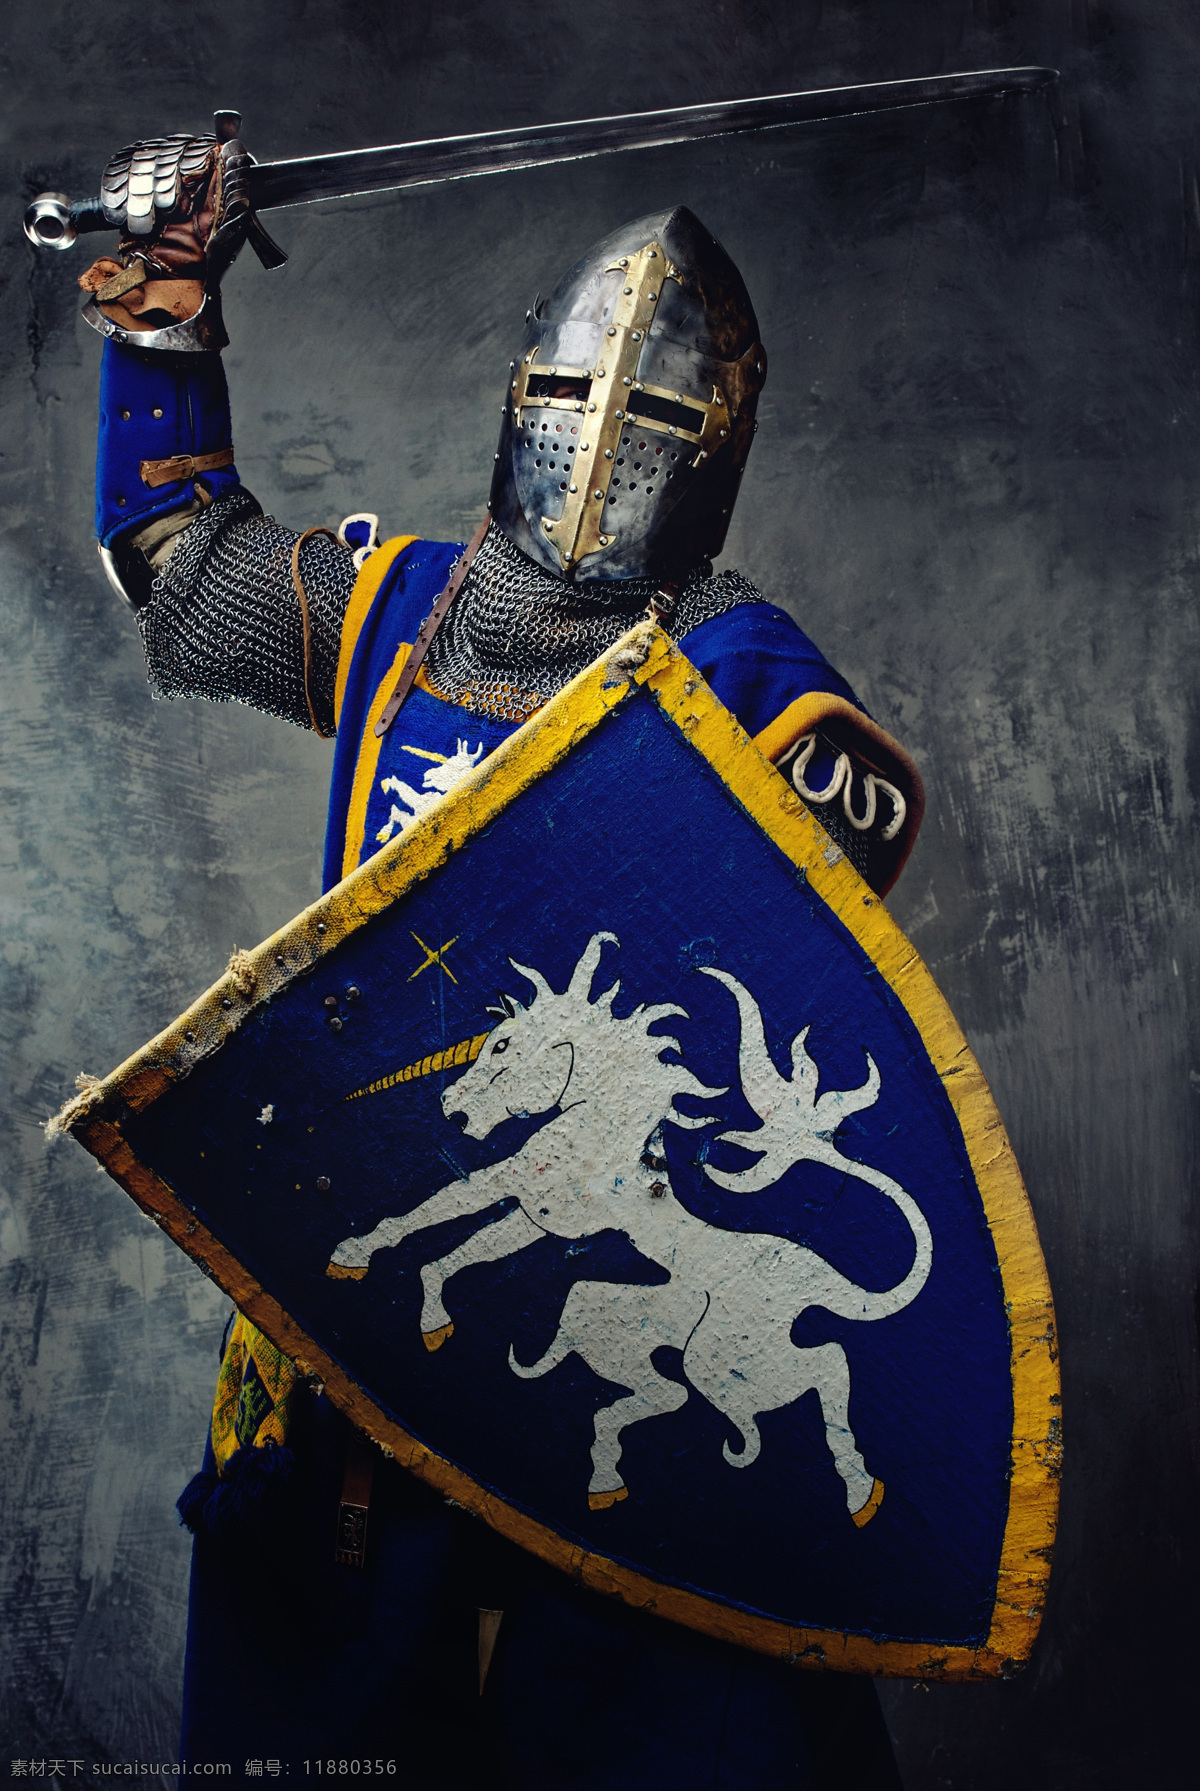 中世纪 骑士 盔甲 头盔 长剑 大剑 盾牌 威武 战斗 挥剑 男人图片 人物图片